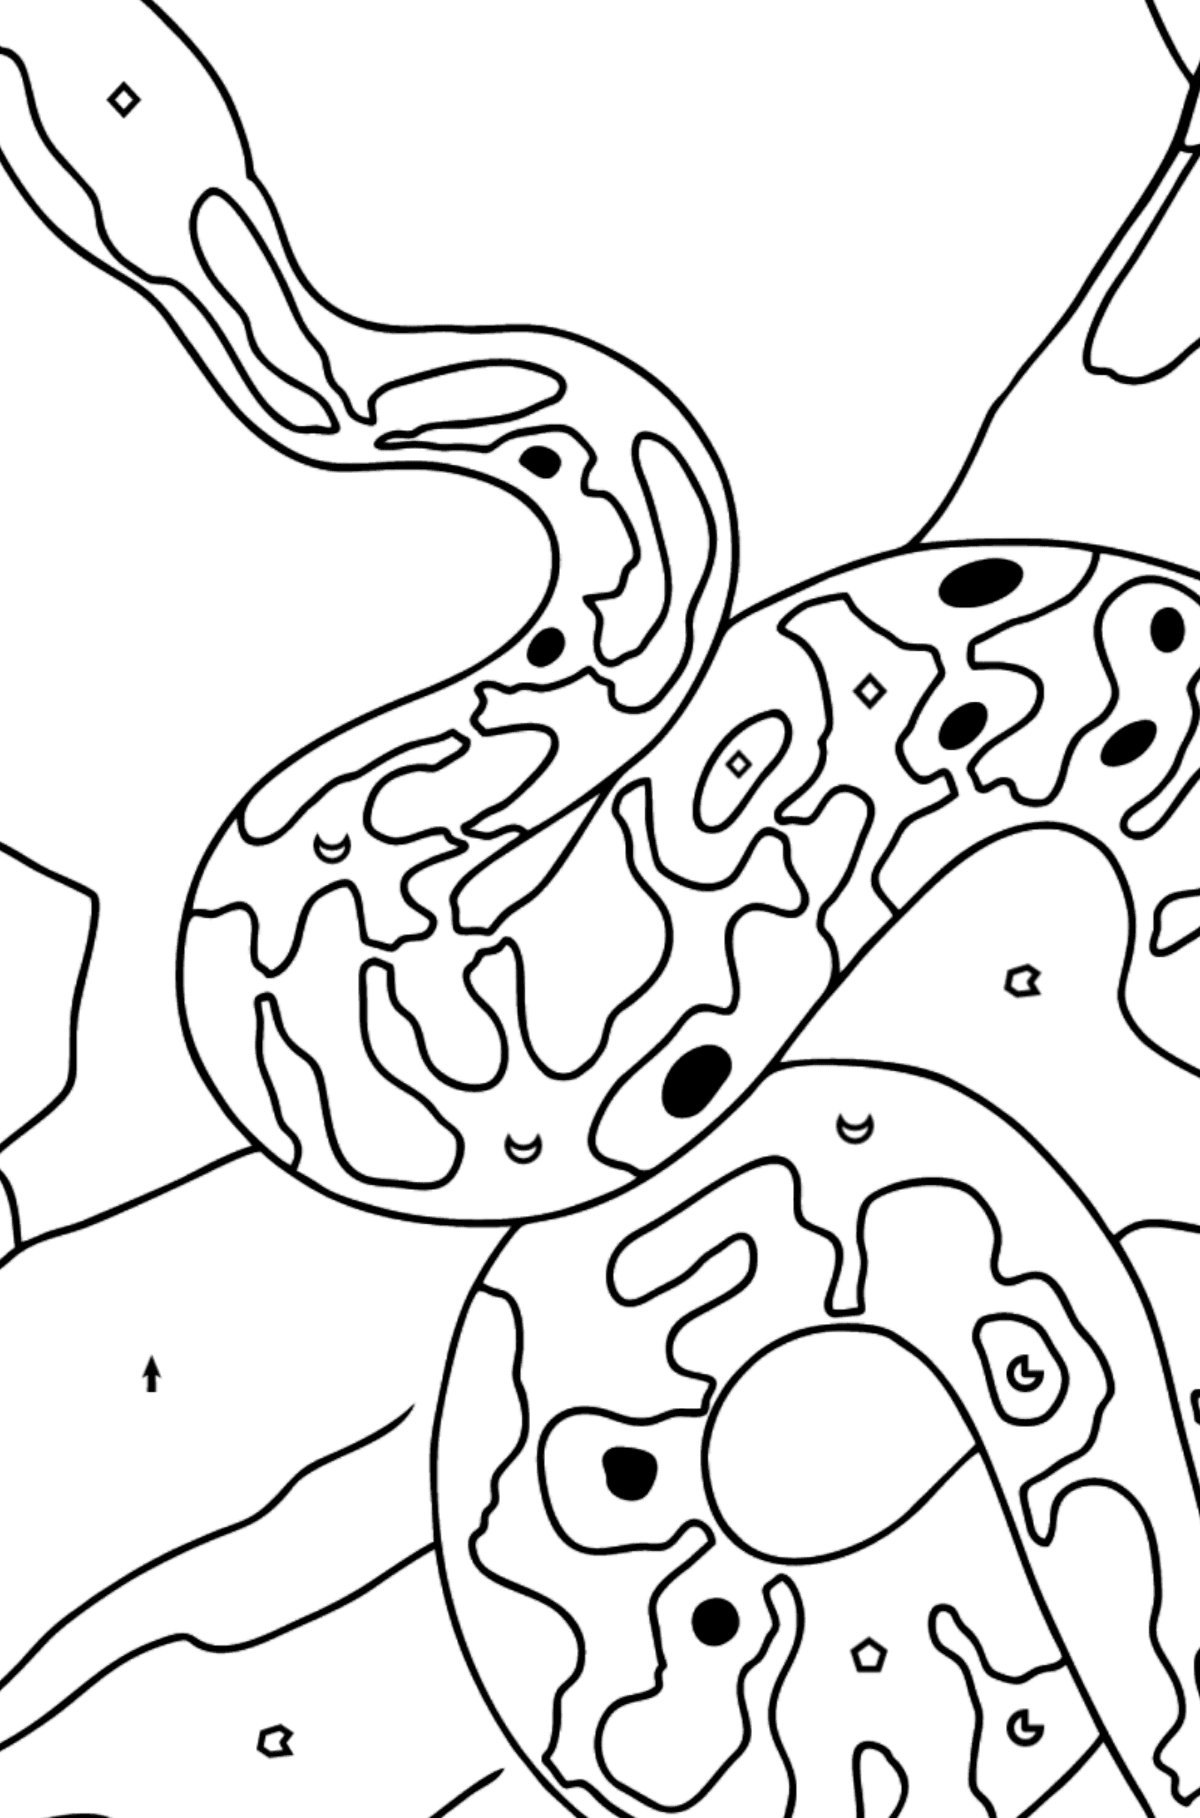 Tegning til farvning slange - farvelægning side efter symboler og geometriske former for børn